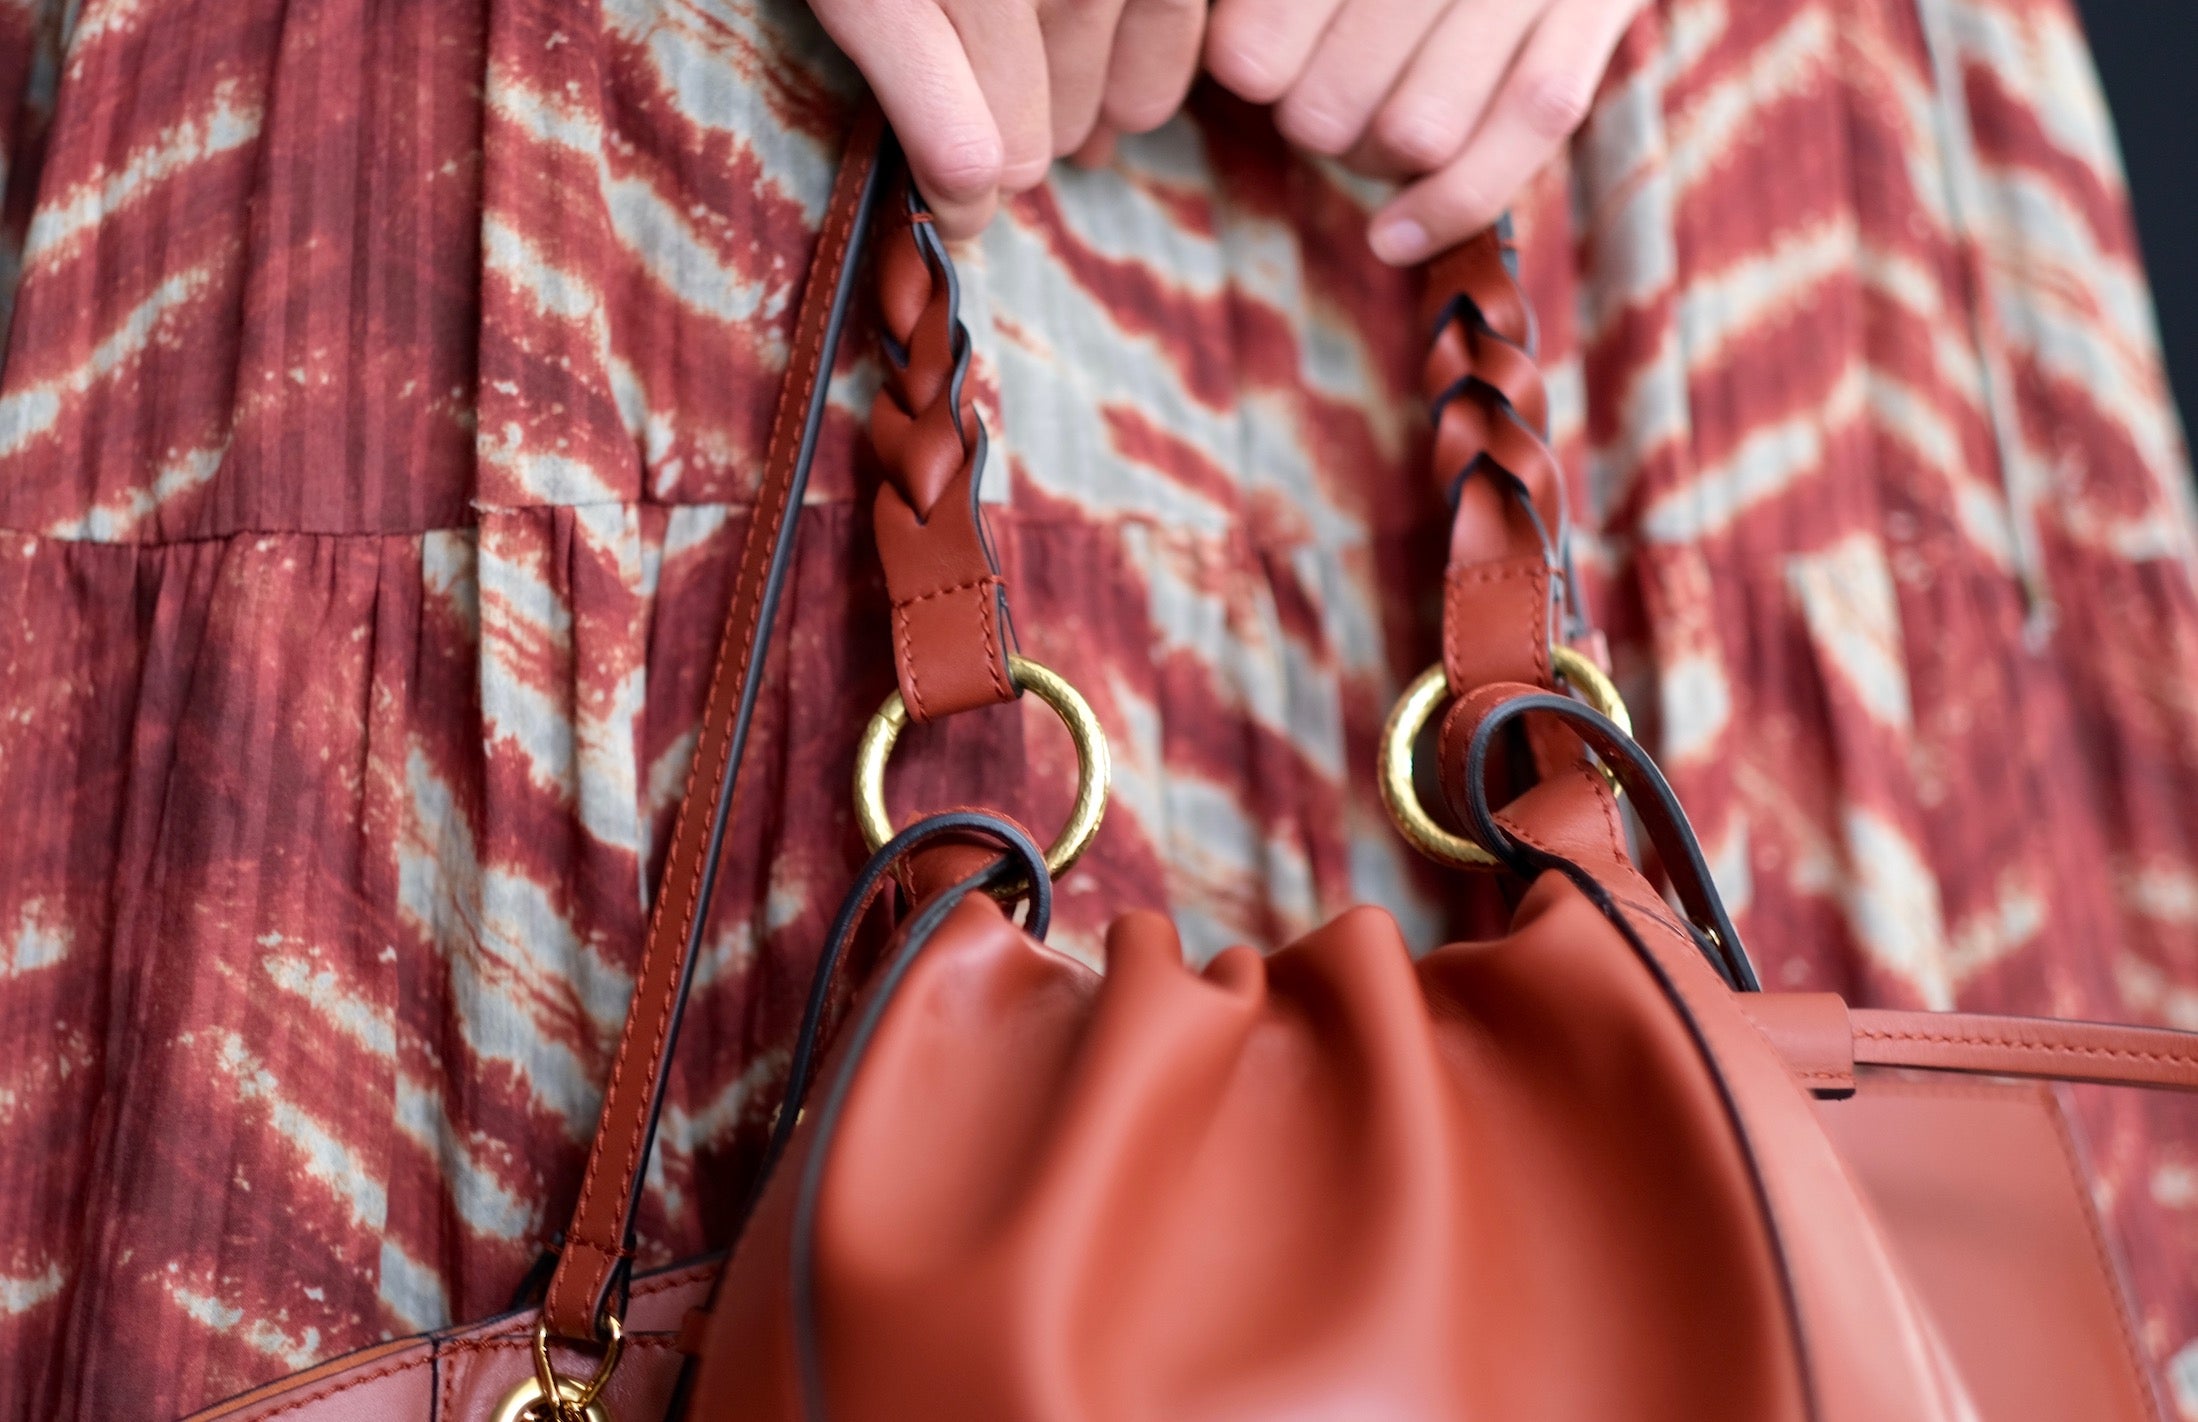 Ulla Johnson PF21 Handbags — Crafted in Italy